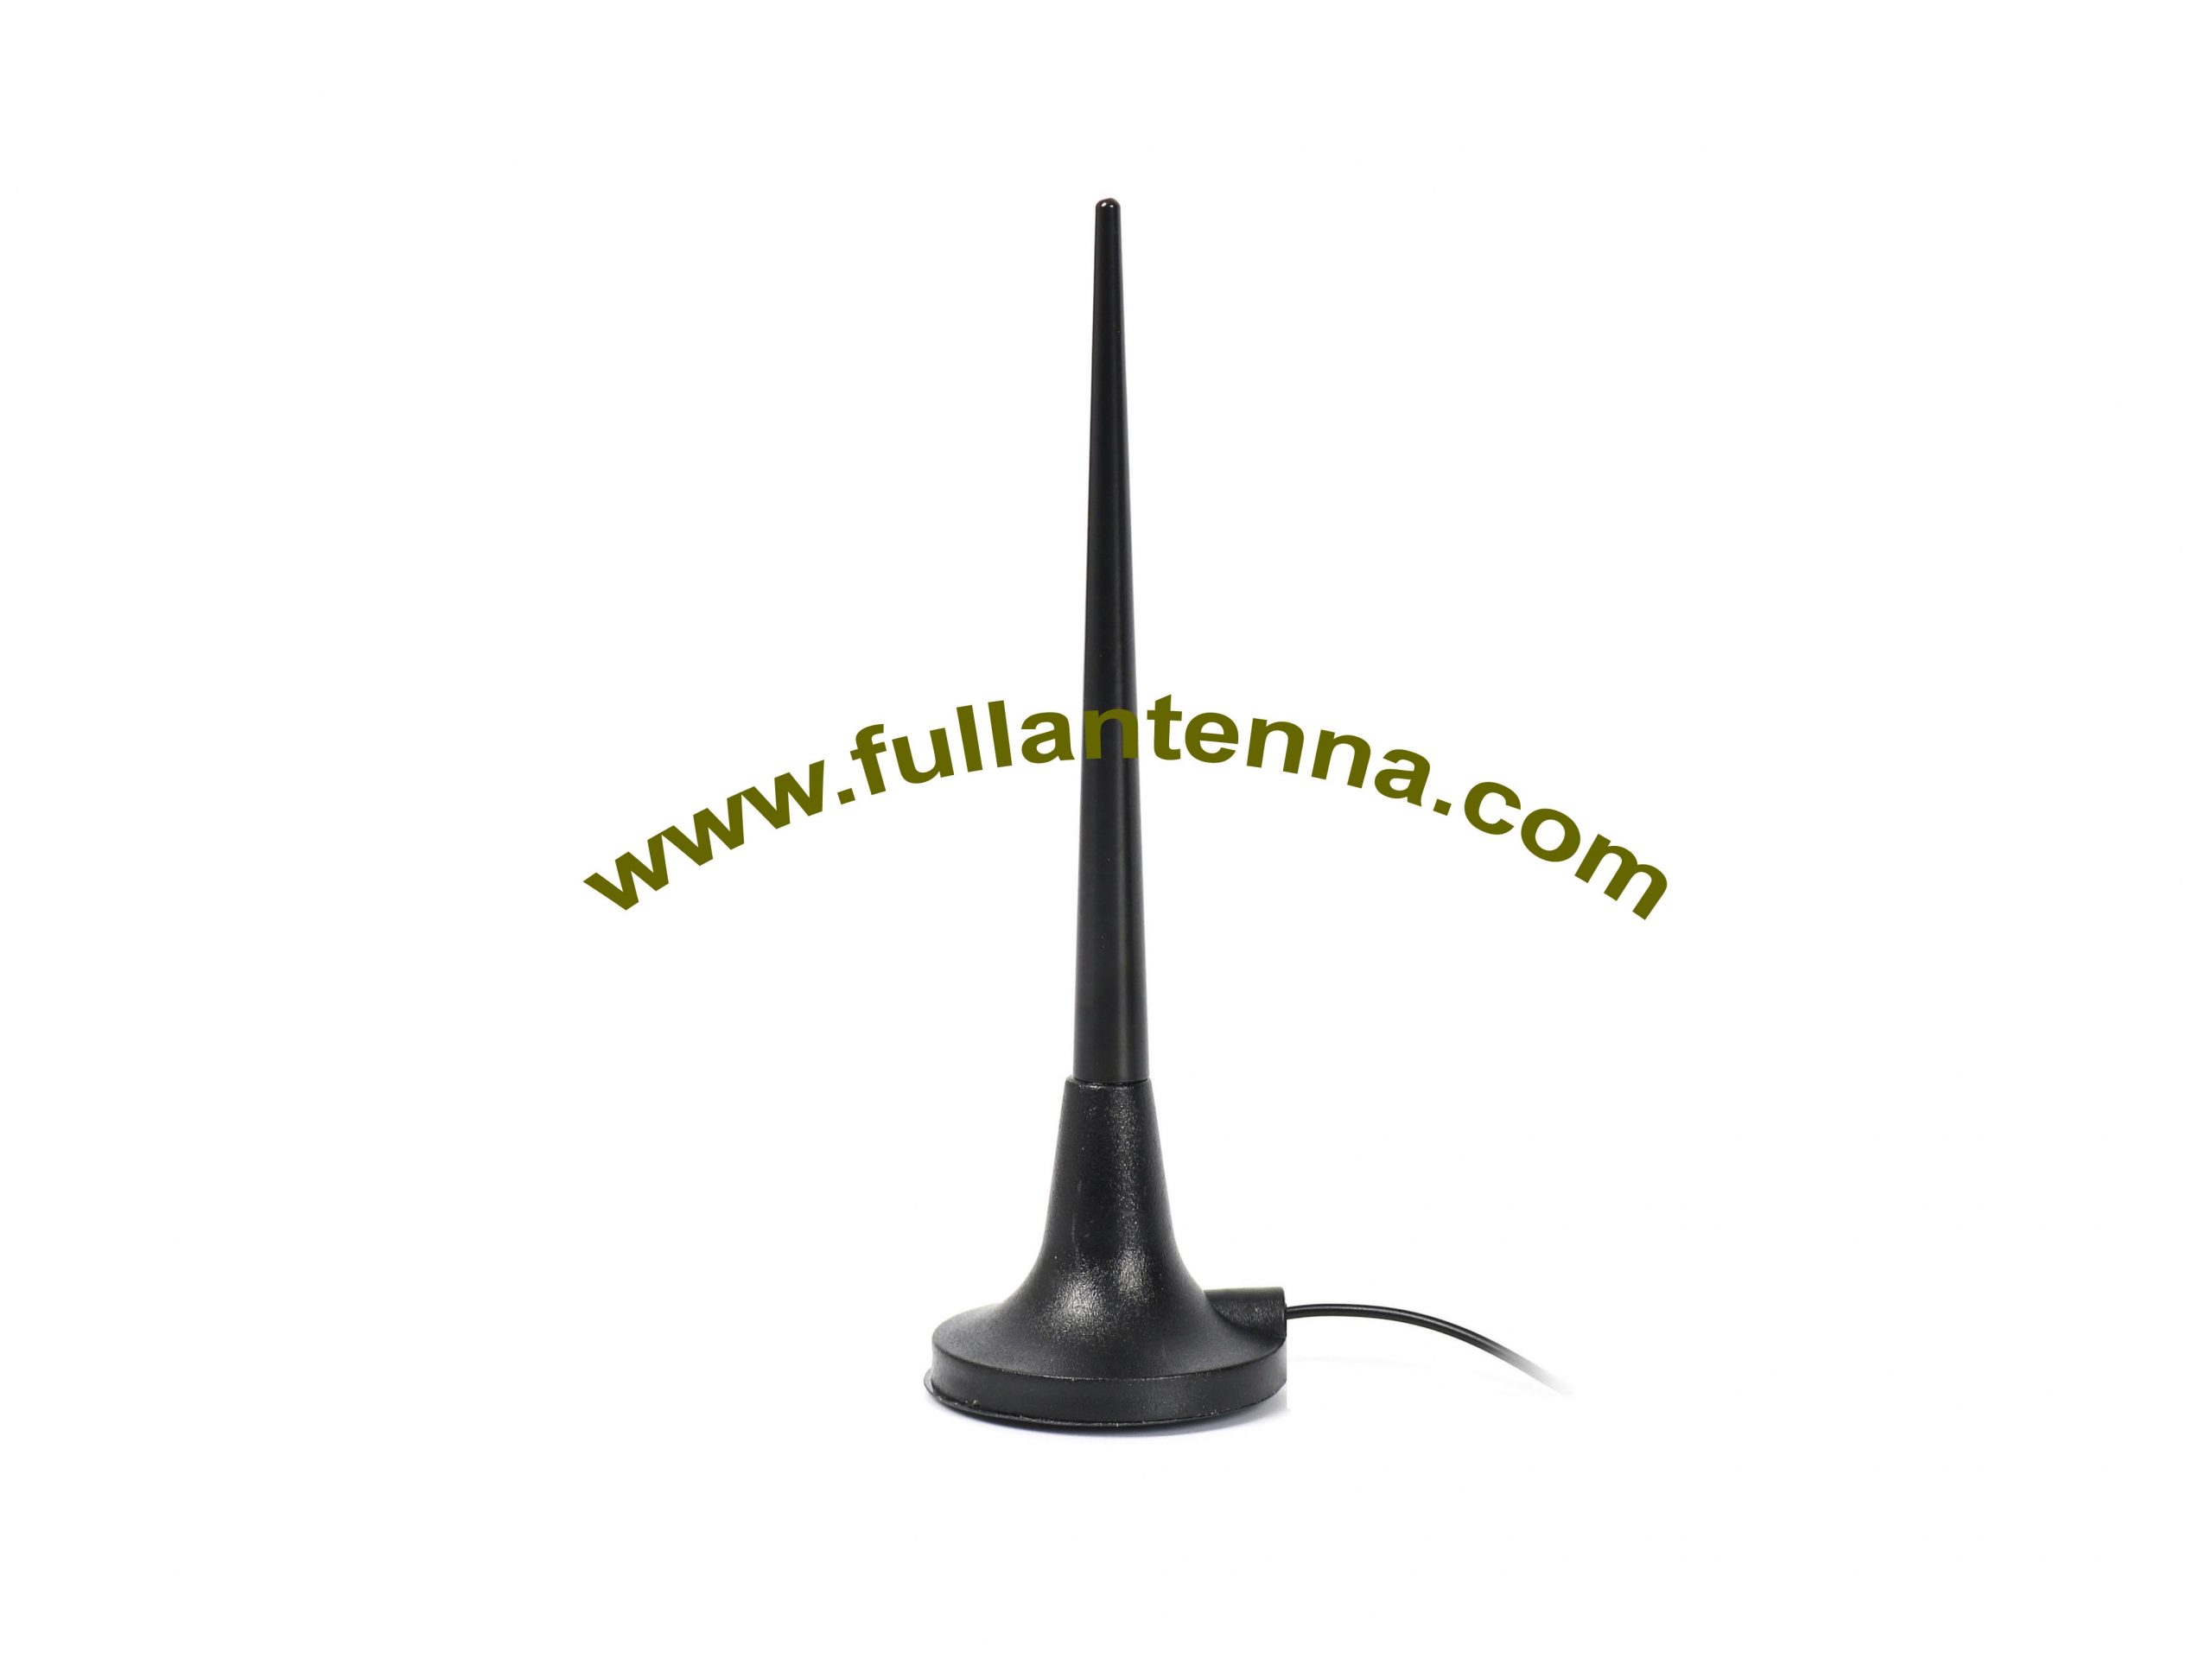 P / N: FAGSM.12, antena externa GSM, látigo metálico de montaje magnético